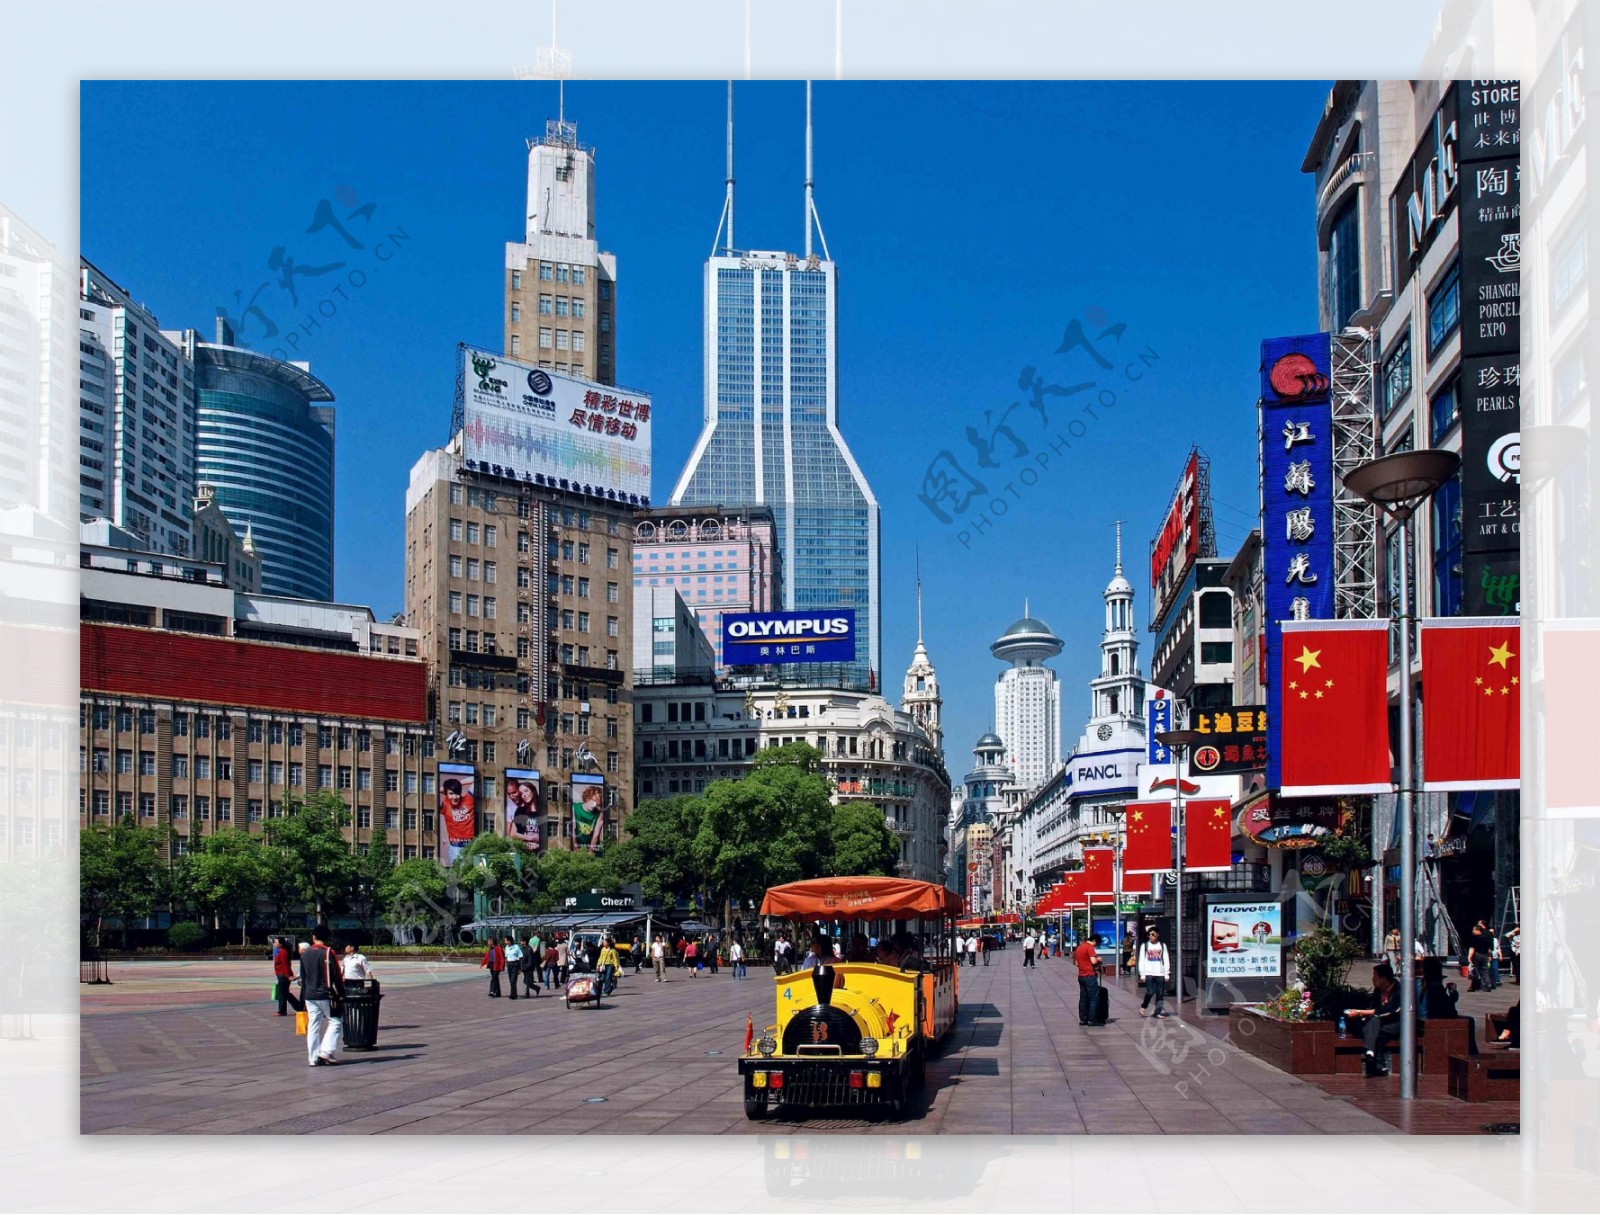 上海南京东路步行街街景图片